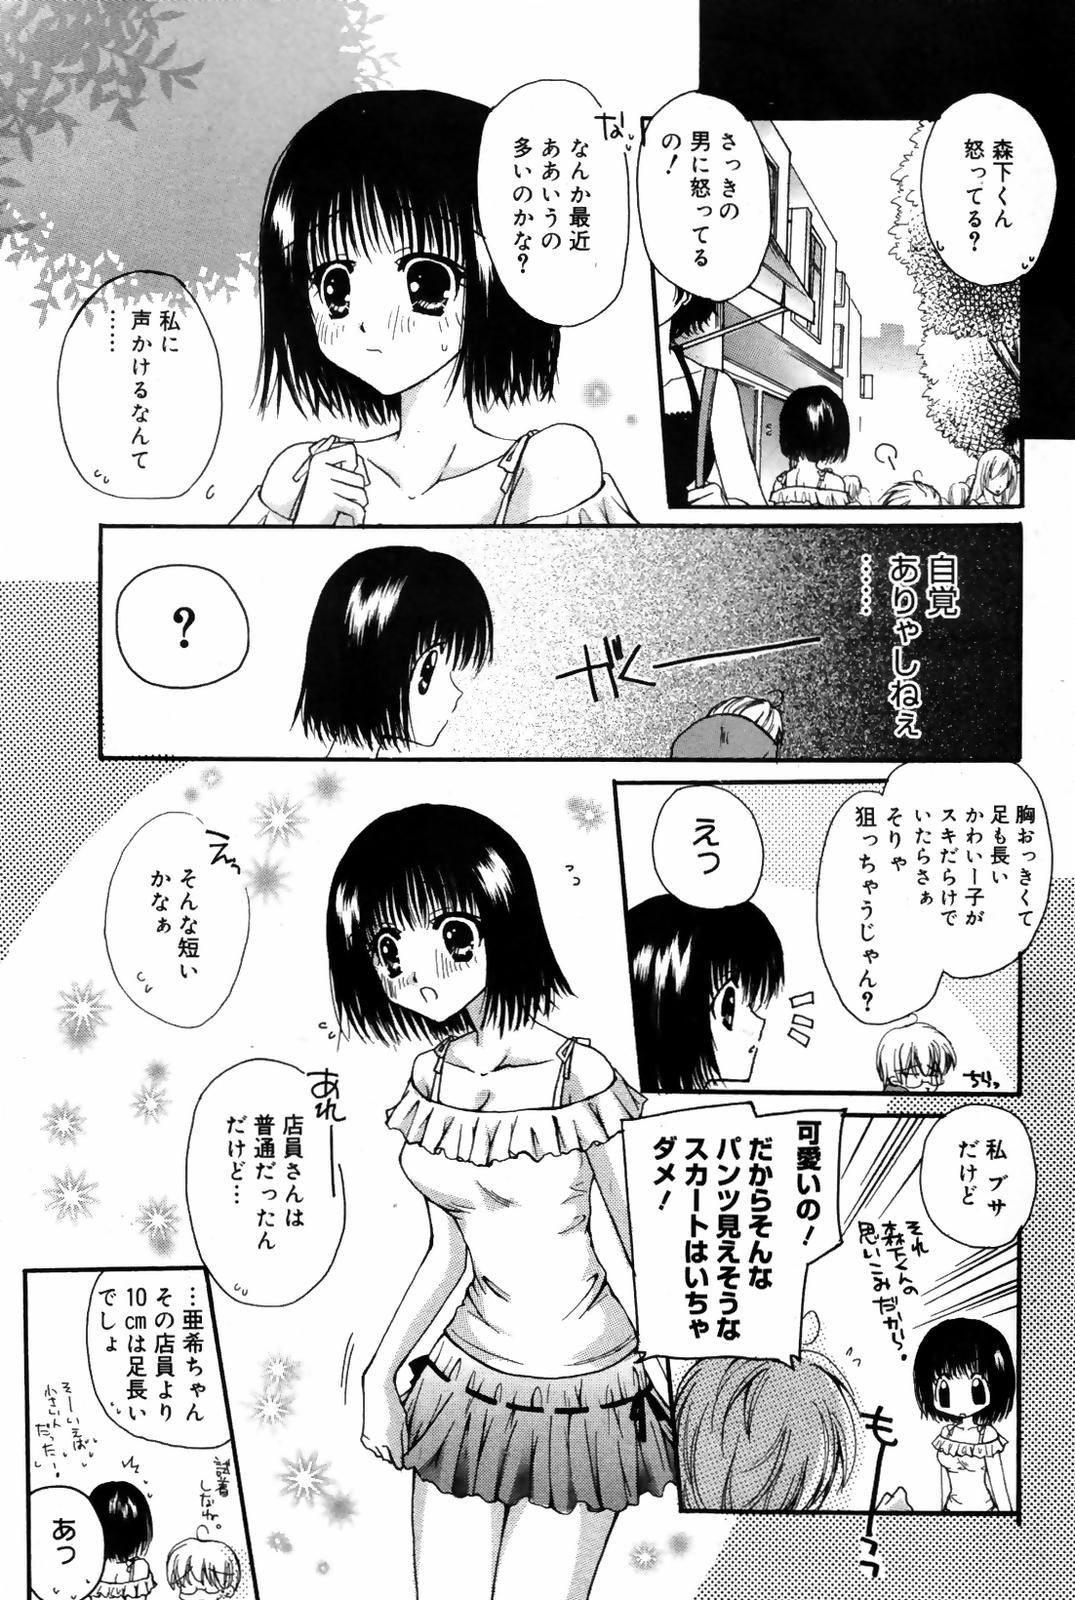 Manga Bangaichi 2007-10 漫画ばんがいち 2007年10月号